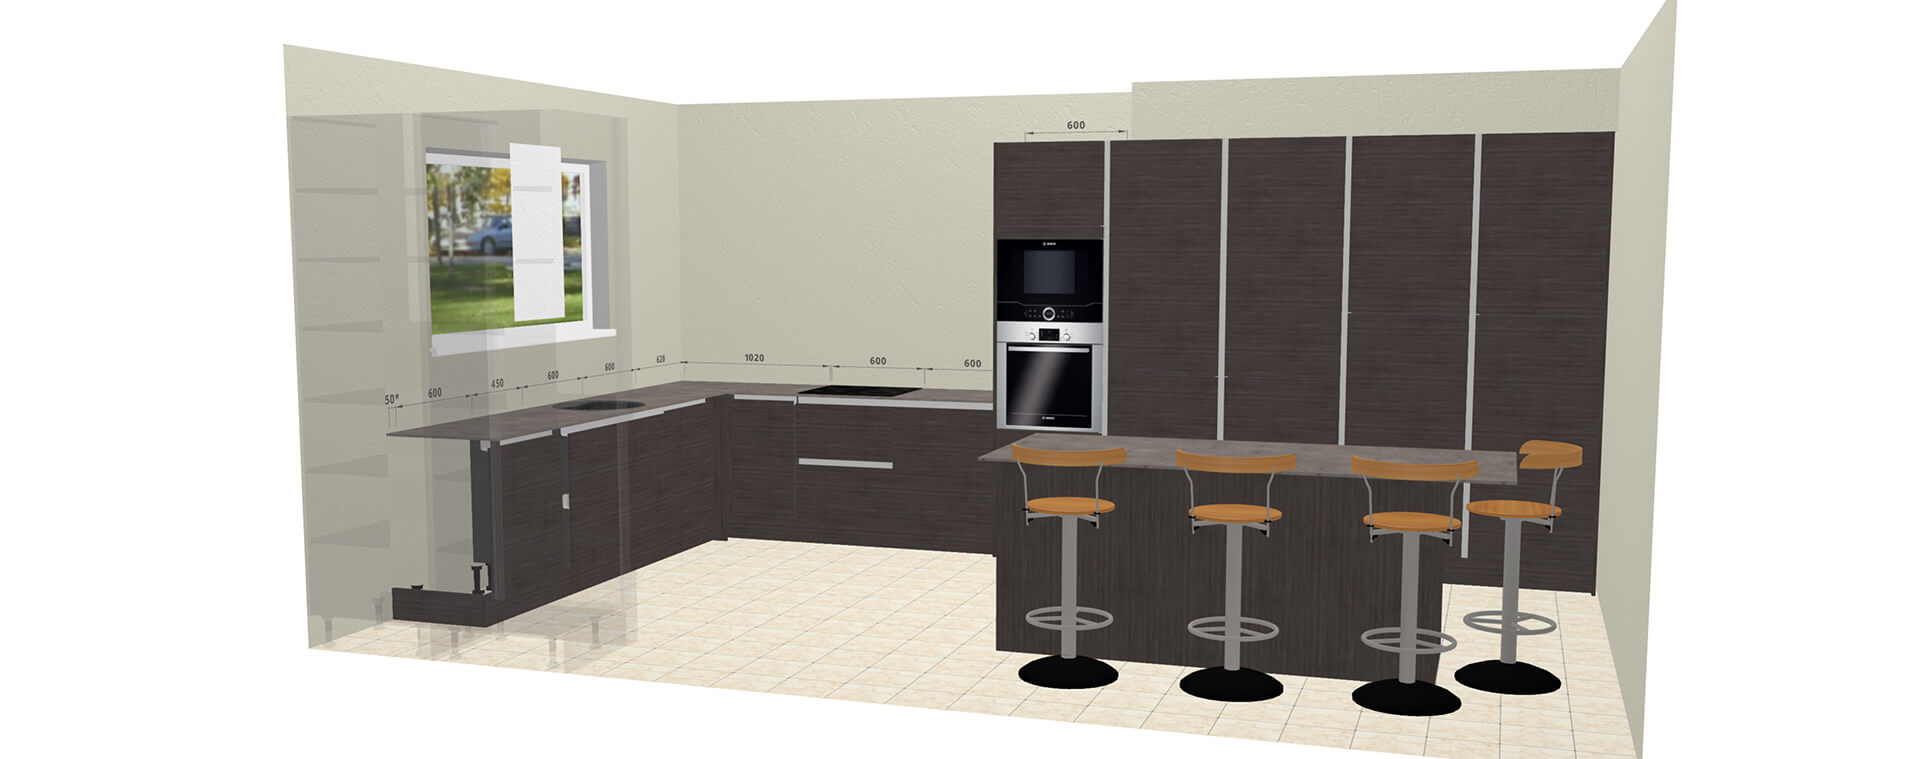 3D Online Kitchen Planner Designs from Better Kitchens